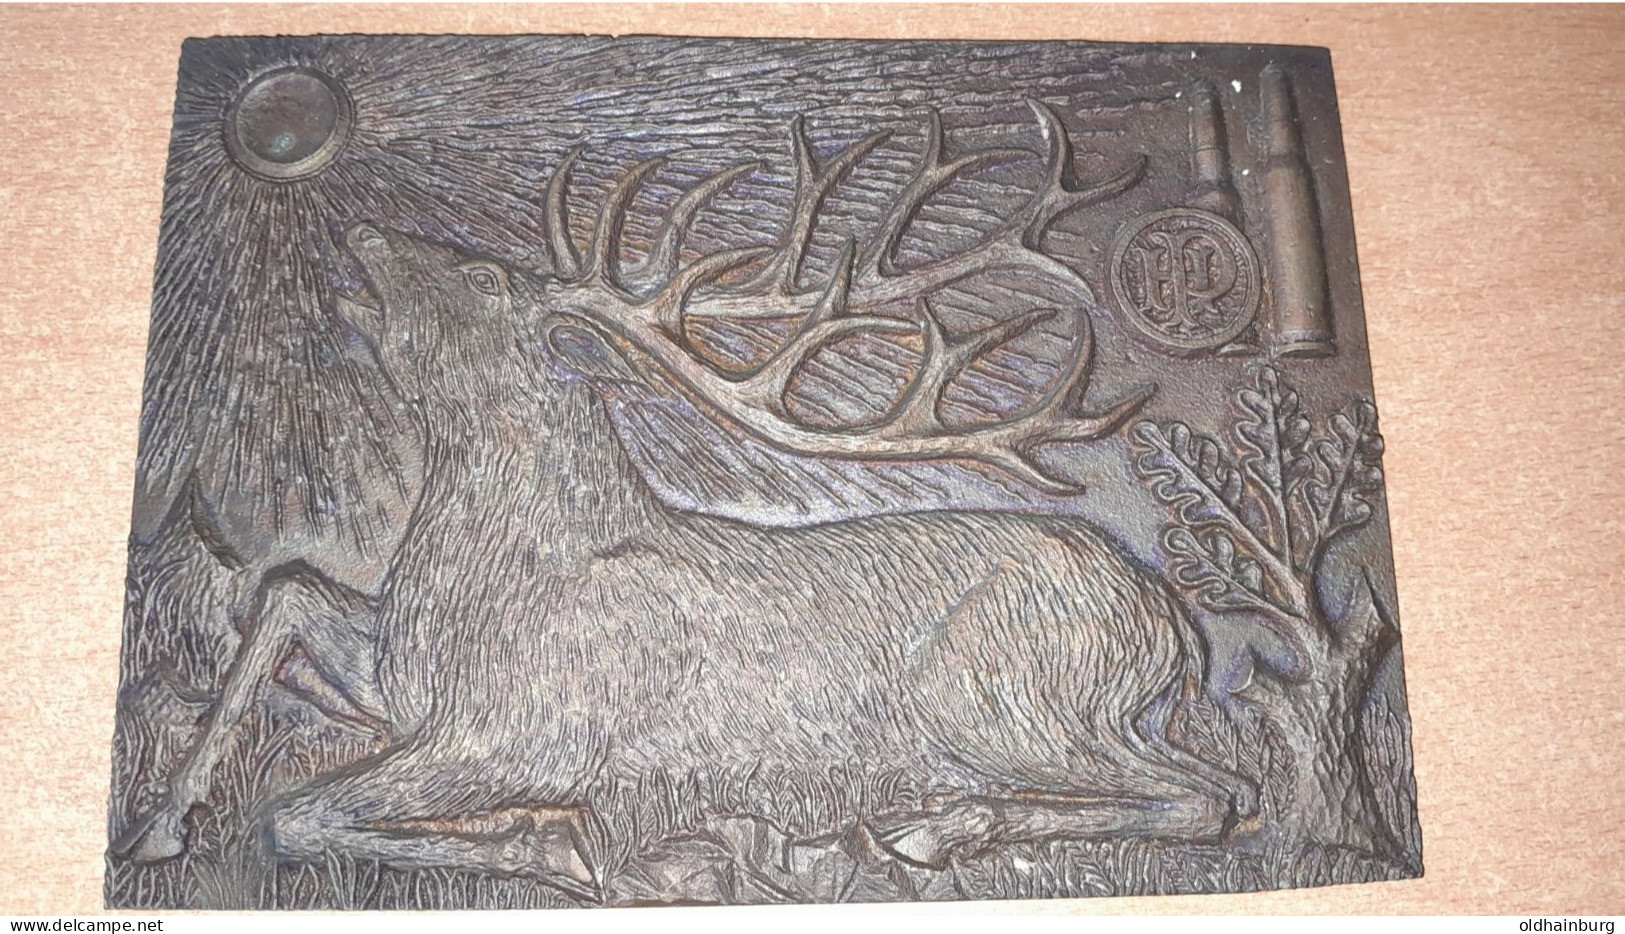 0051: Bronzebild Aus Alter Jagdhütte A- 2410 Hainburg An Der Donau, Hirsch 20 Cm X 14,5 Cm - Bronces